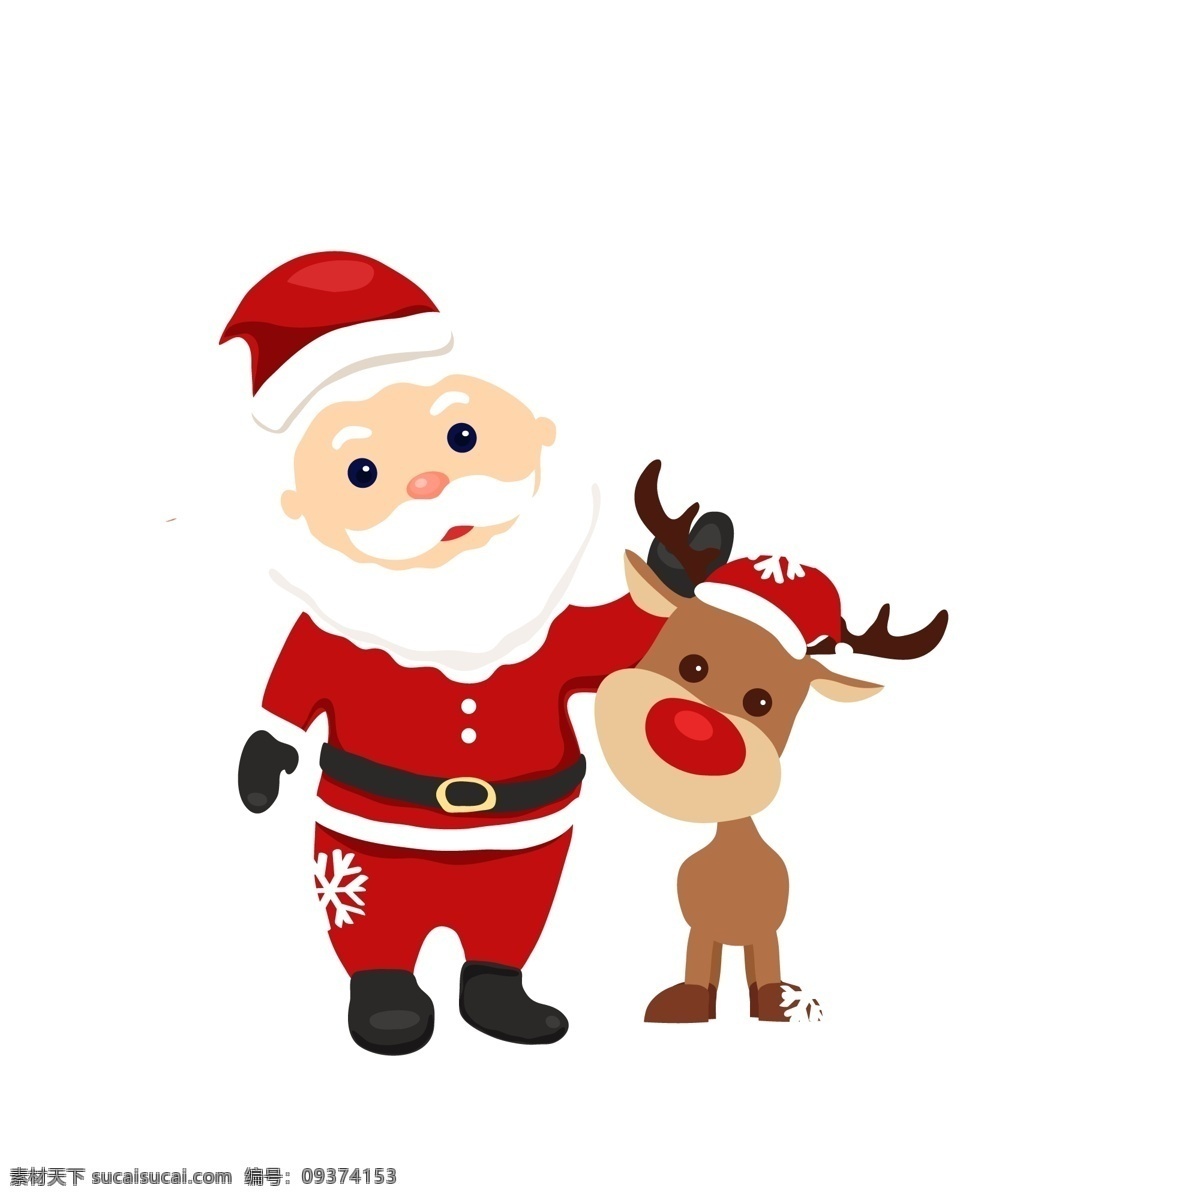 圣诞节 插画 手绘 麋鹿 圣诞老人 圣诞夜 节日插画 圣诞插画 简单 雪花 贺卡